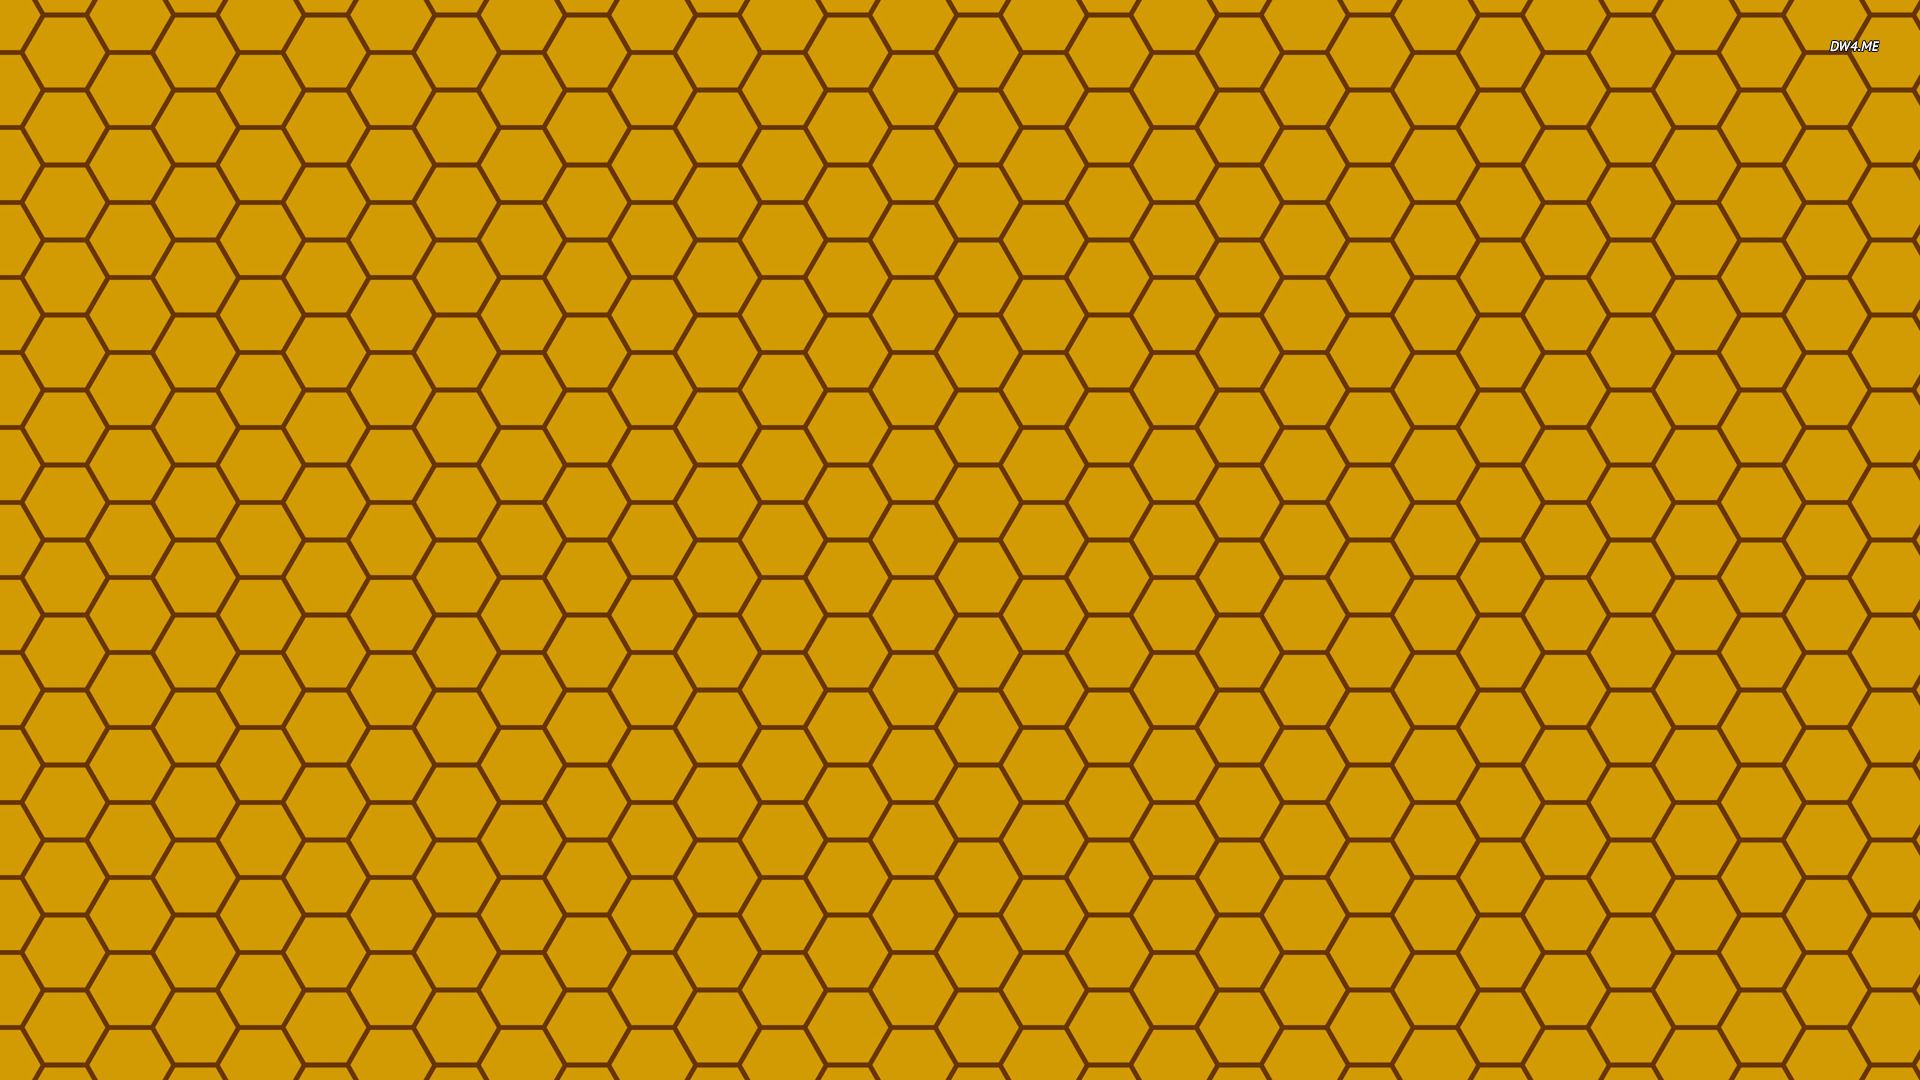 Honeycomb wallpaper - Vector wallpapers